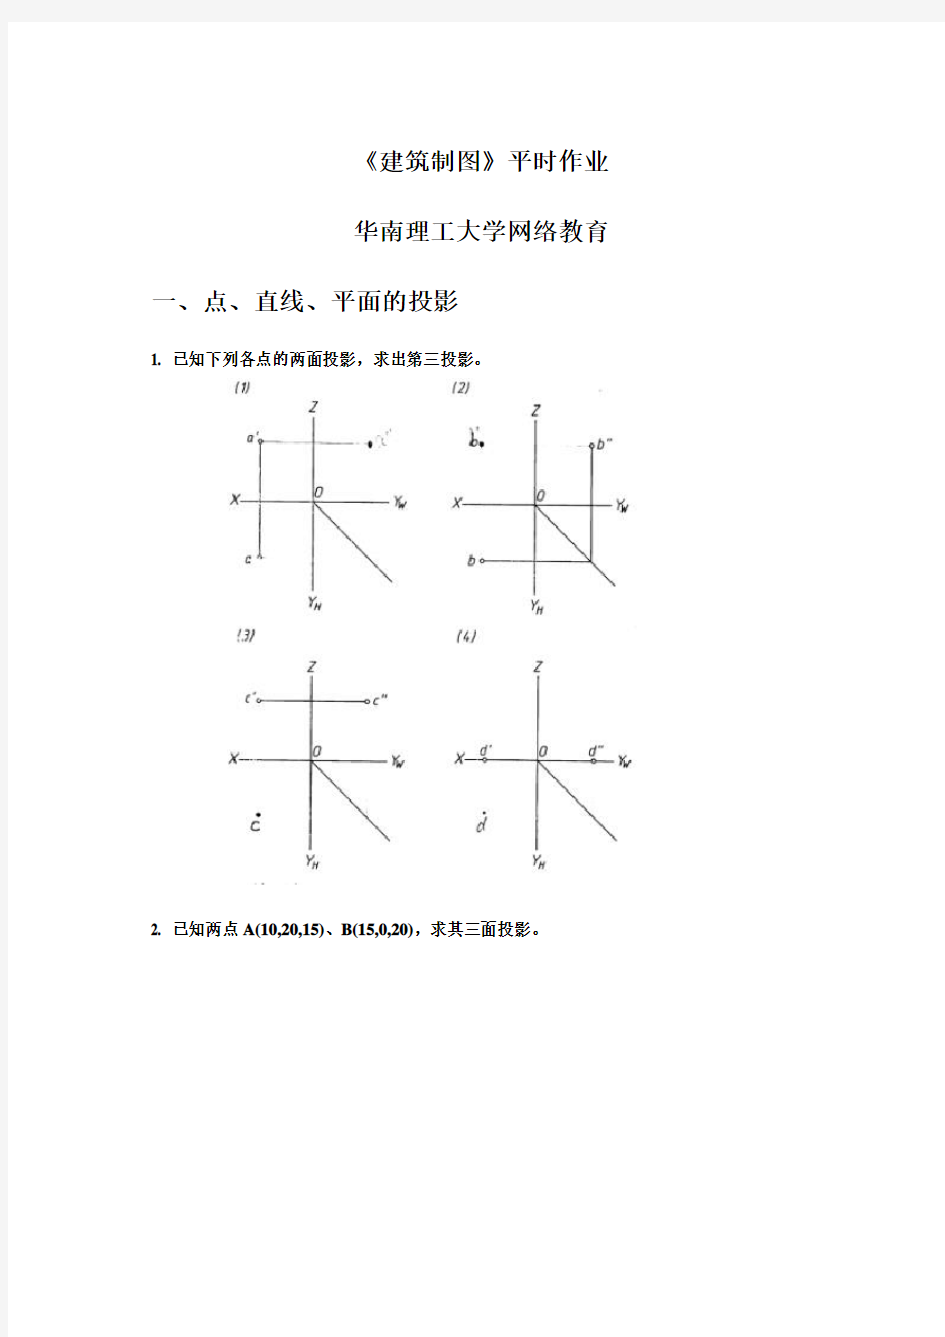 《建筑制图》平时作业-华南理工大学网络教育